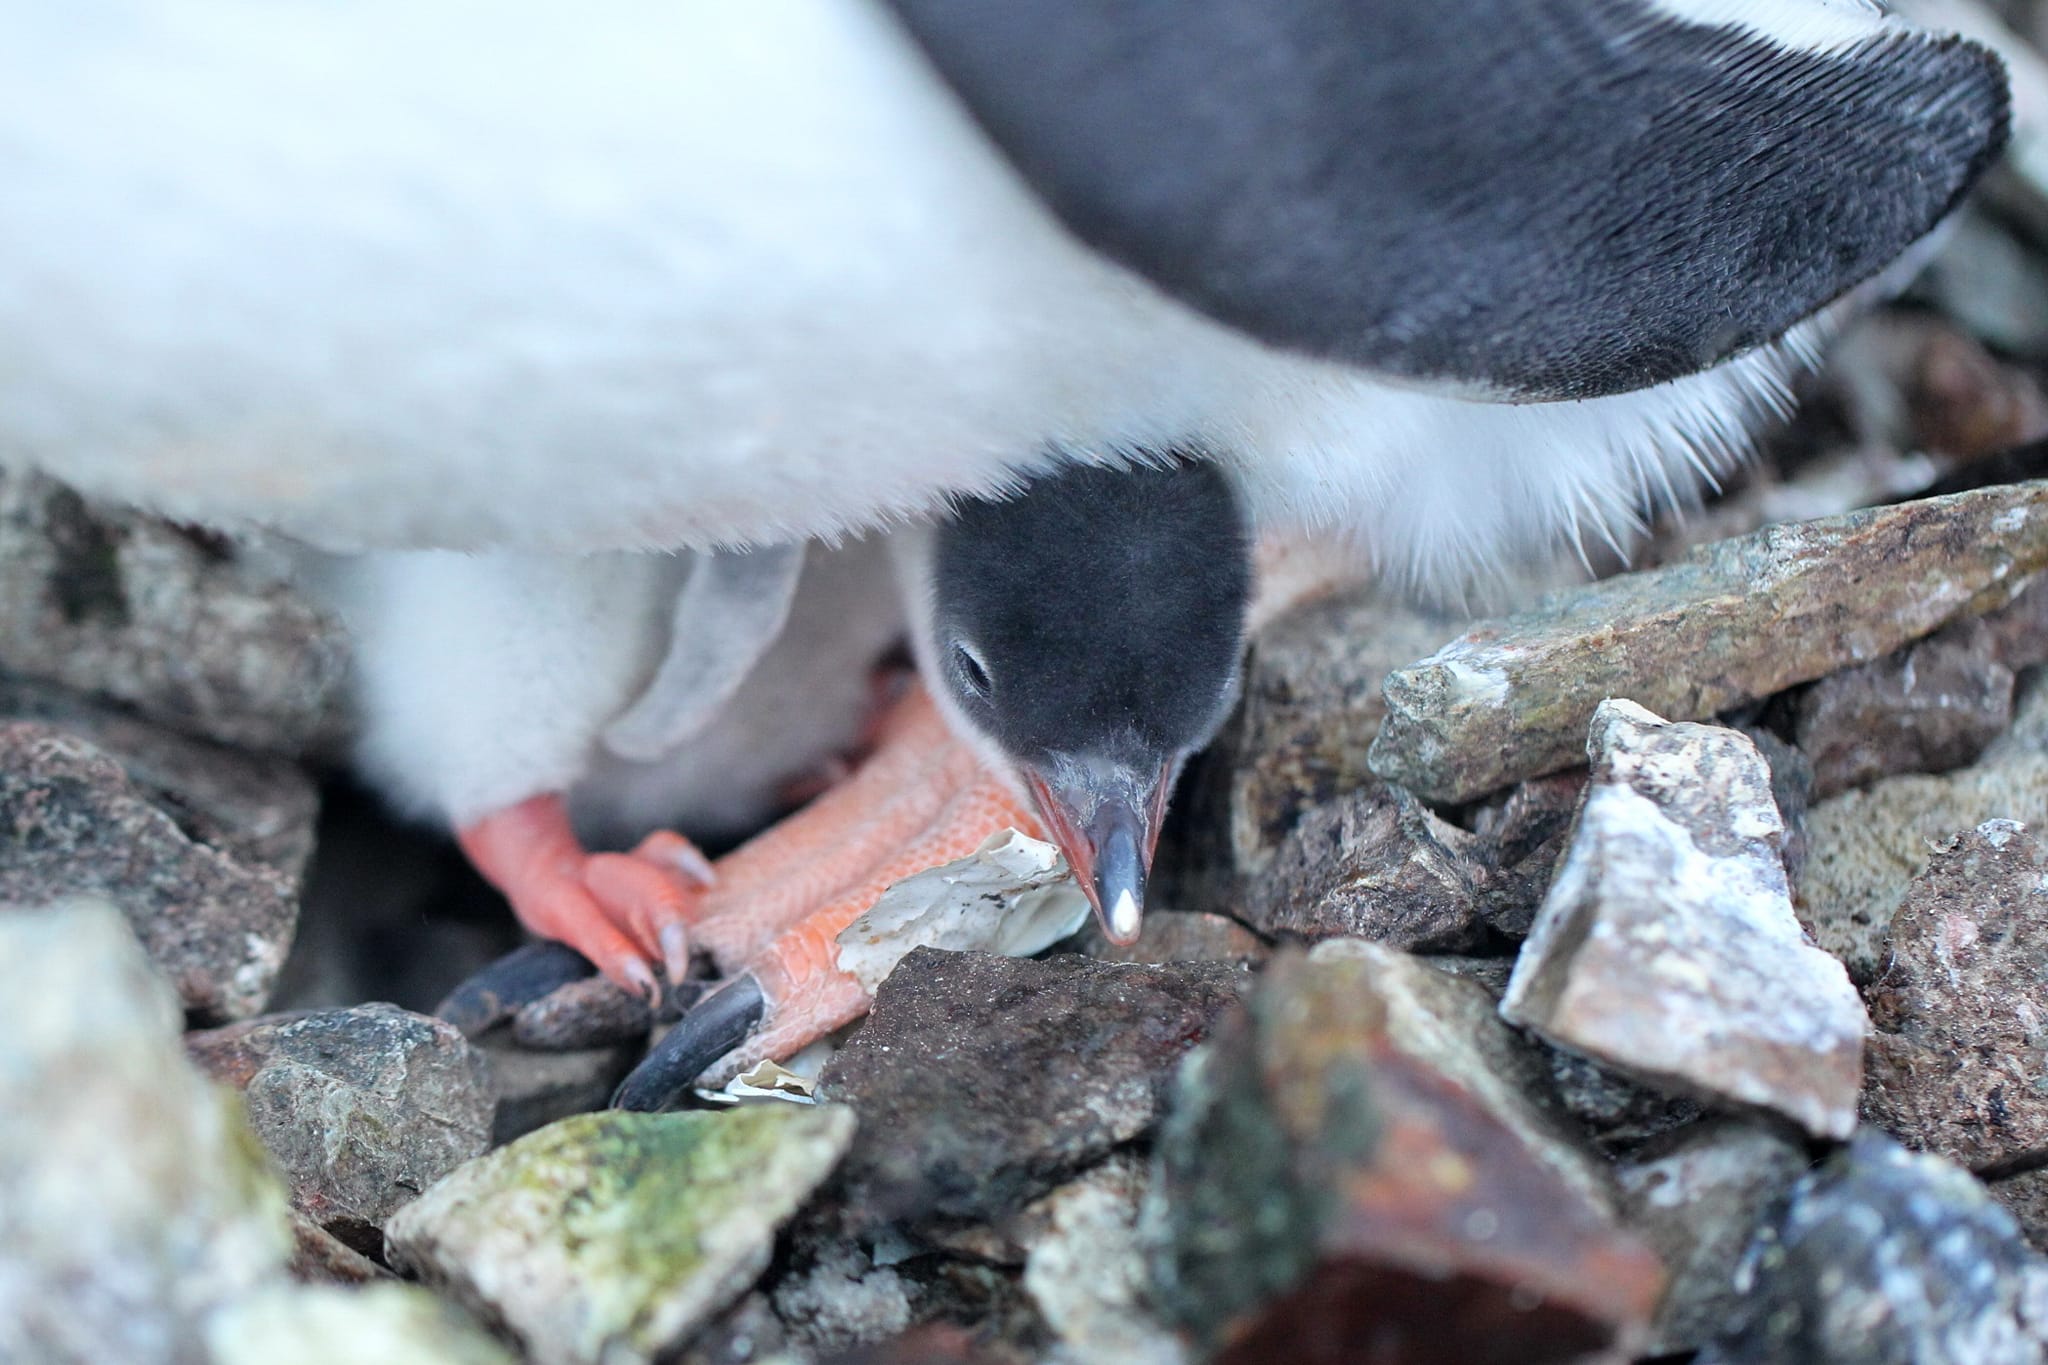 Біля станції "Академік Вернадський" з'явилися перші в цьому році пташенята субантарктичних пінгвінів